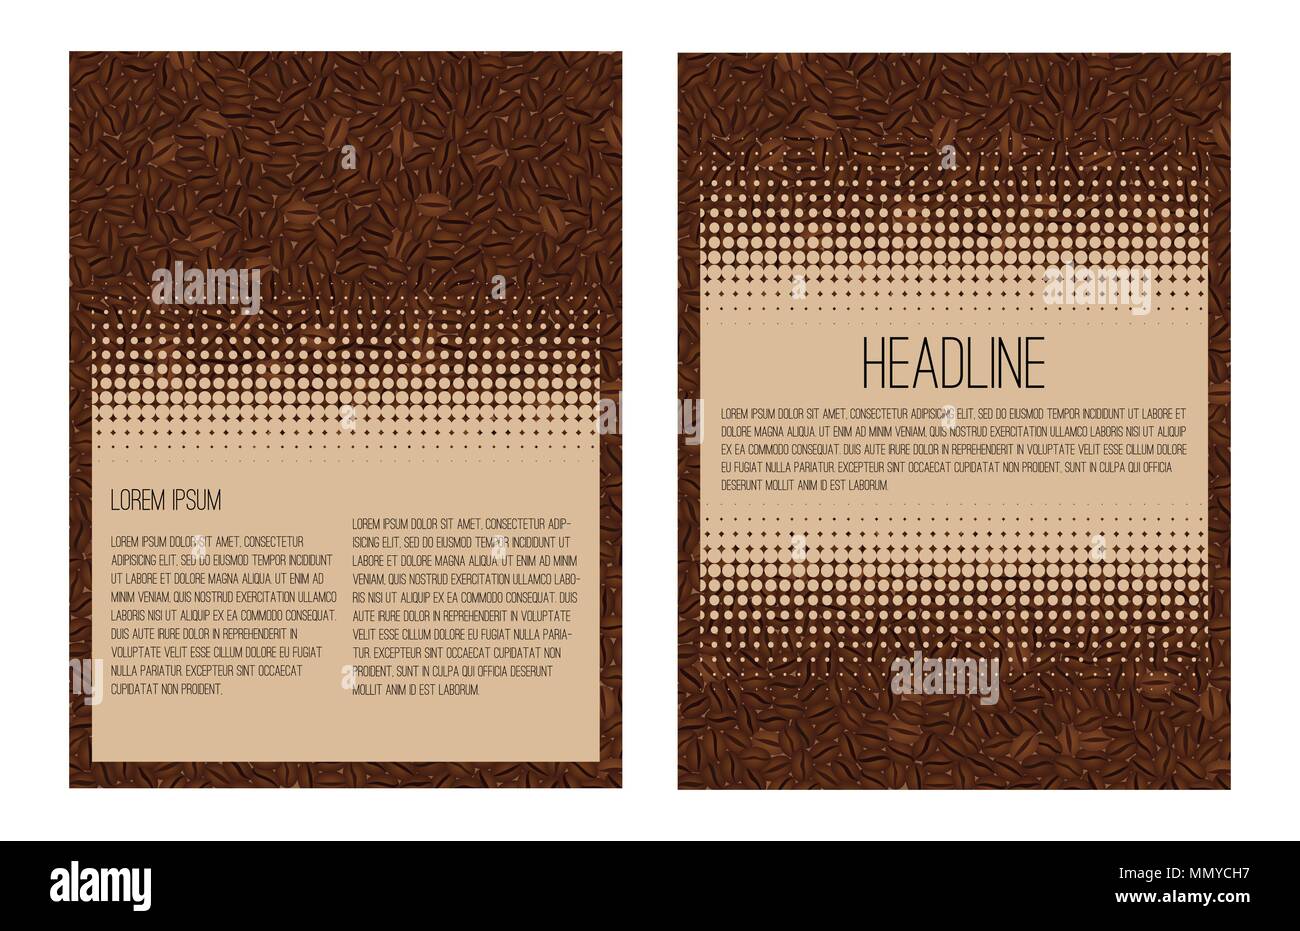 Broschure Layout Vorlage Flyer Design Vector Hintergrund In Kaffee Bohnen Stock Vektorgrafik Alamy